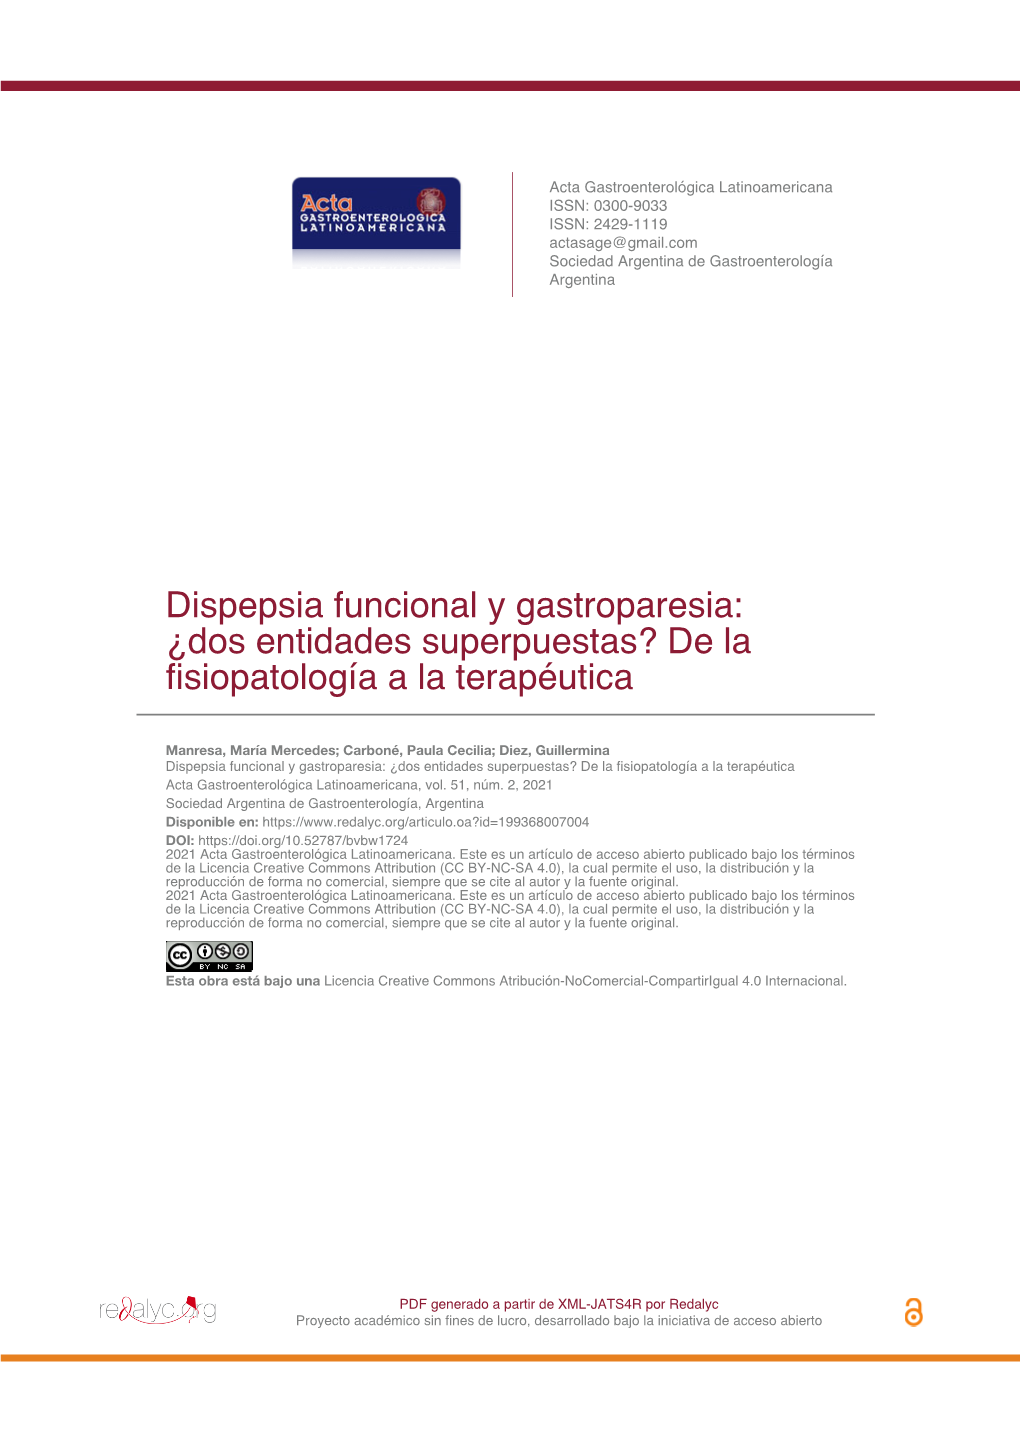 Dispepsia Funcional Y Gastroparesia: ¿Dos Entidades Superpuestas? De La Fisiopatología a La Terapéutica